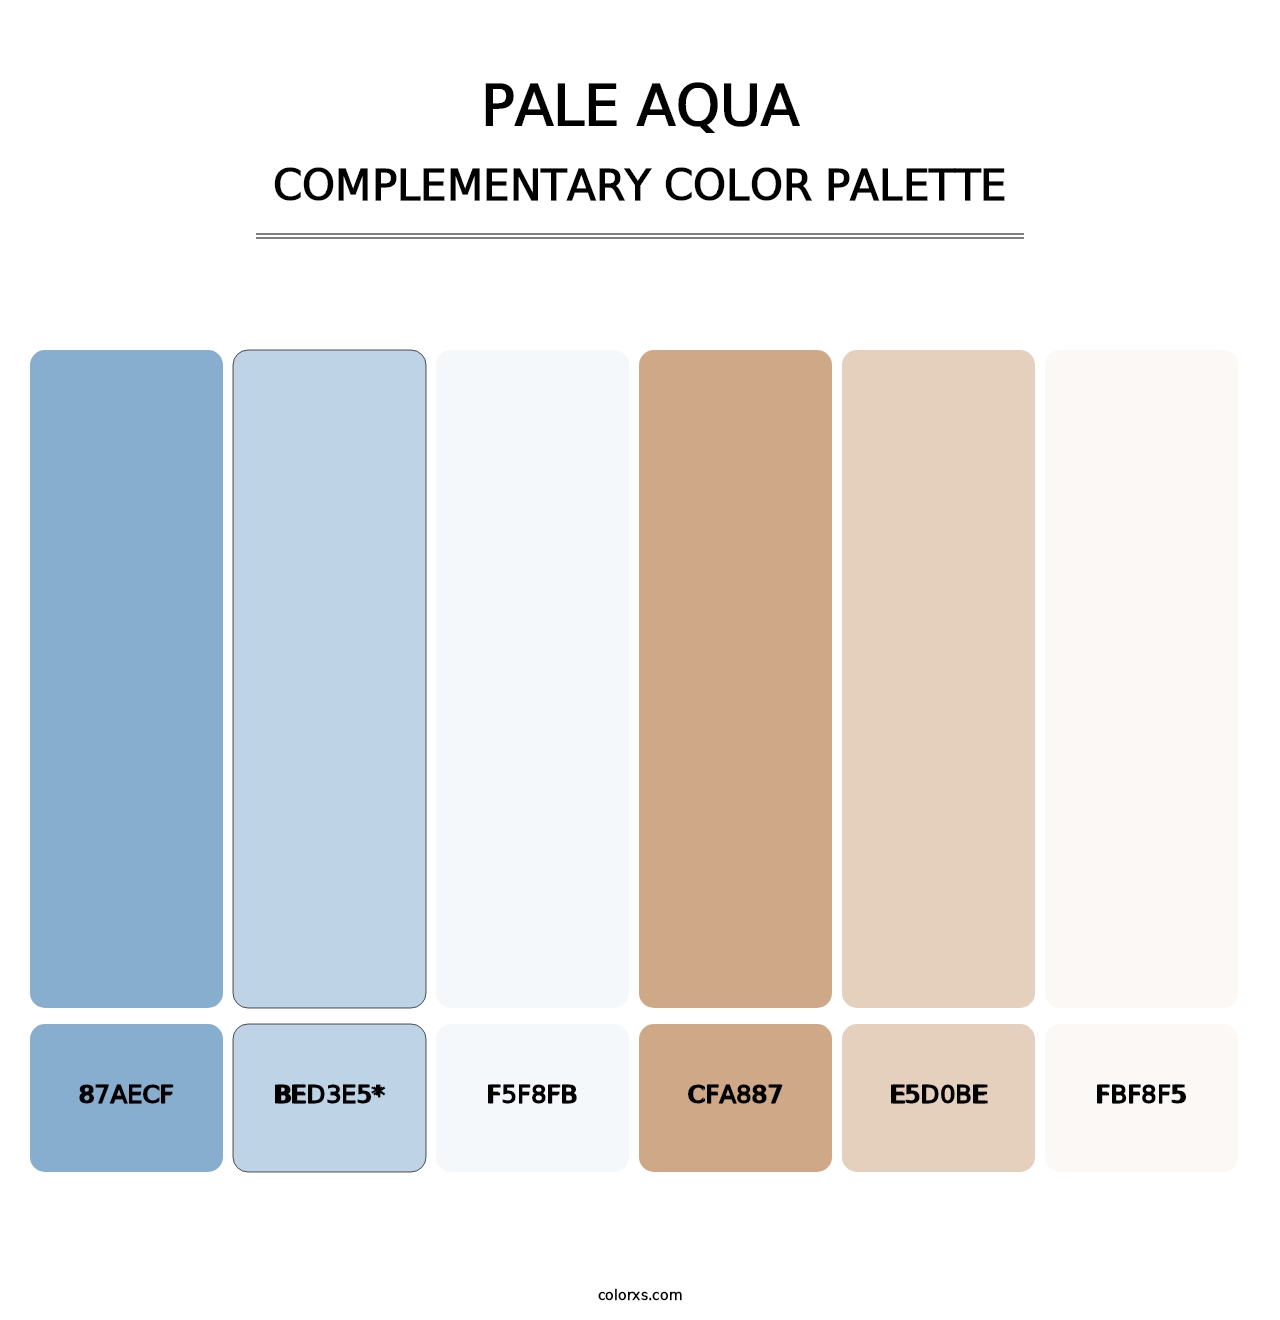 Pale Aqua - Complementary Color Palette